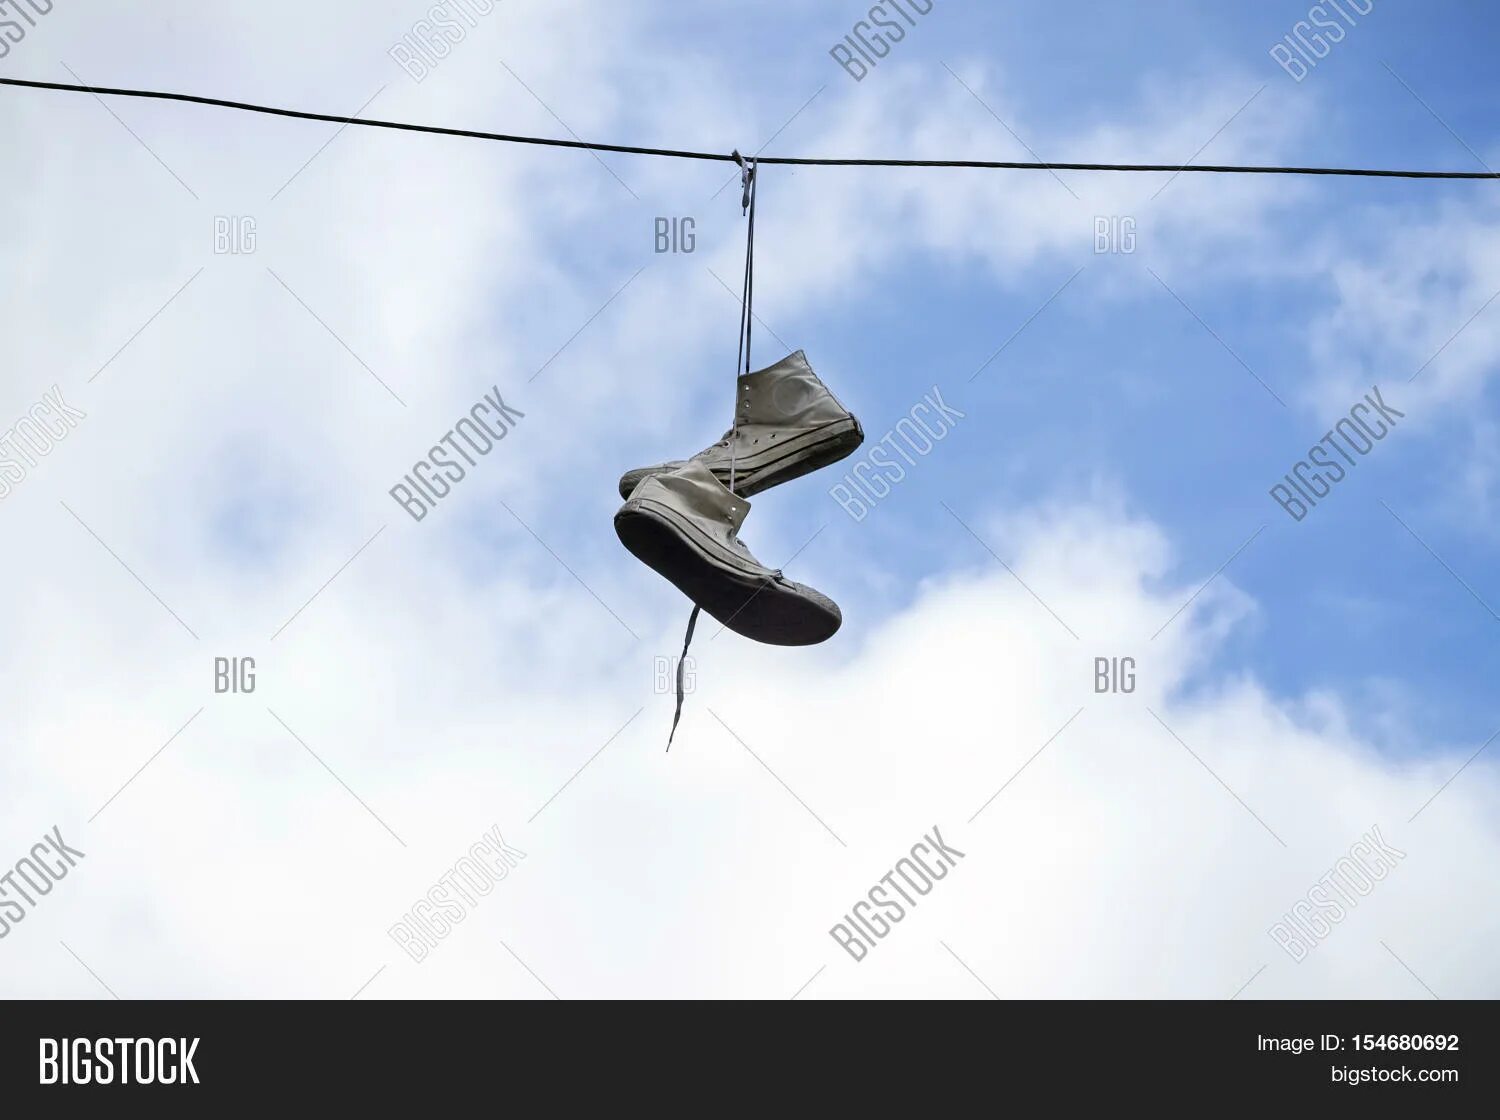 Висячие кроссовки на проводах. Кеды висят на проводах. Кроссовки на электрических проводах. Летающие тапочки. Что значит висящие кроссовки